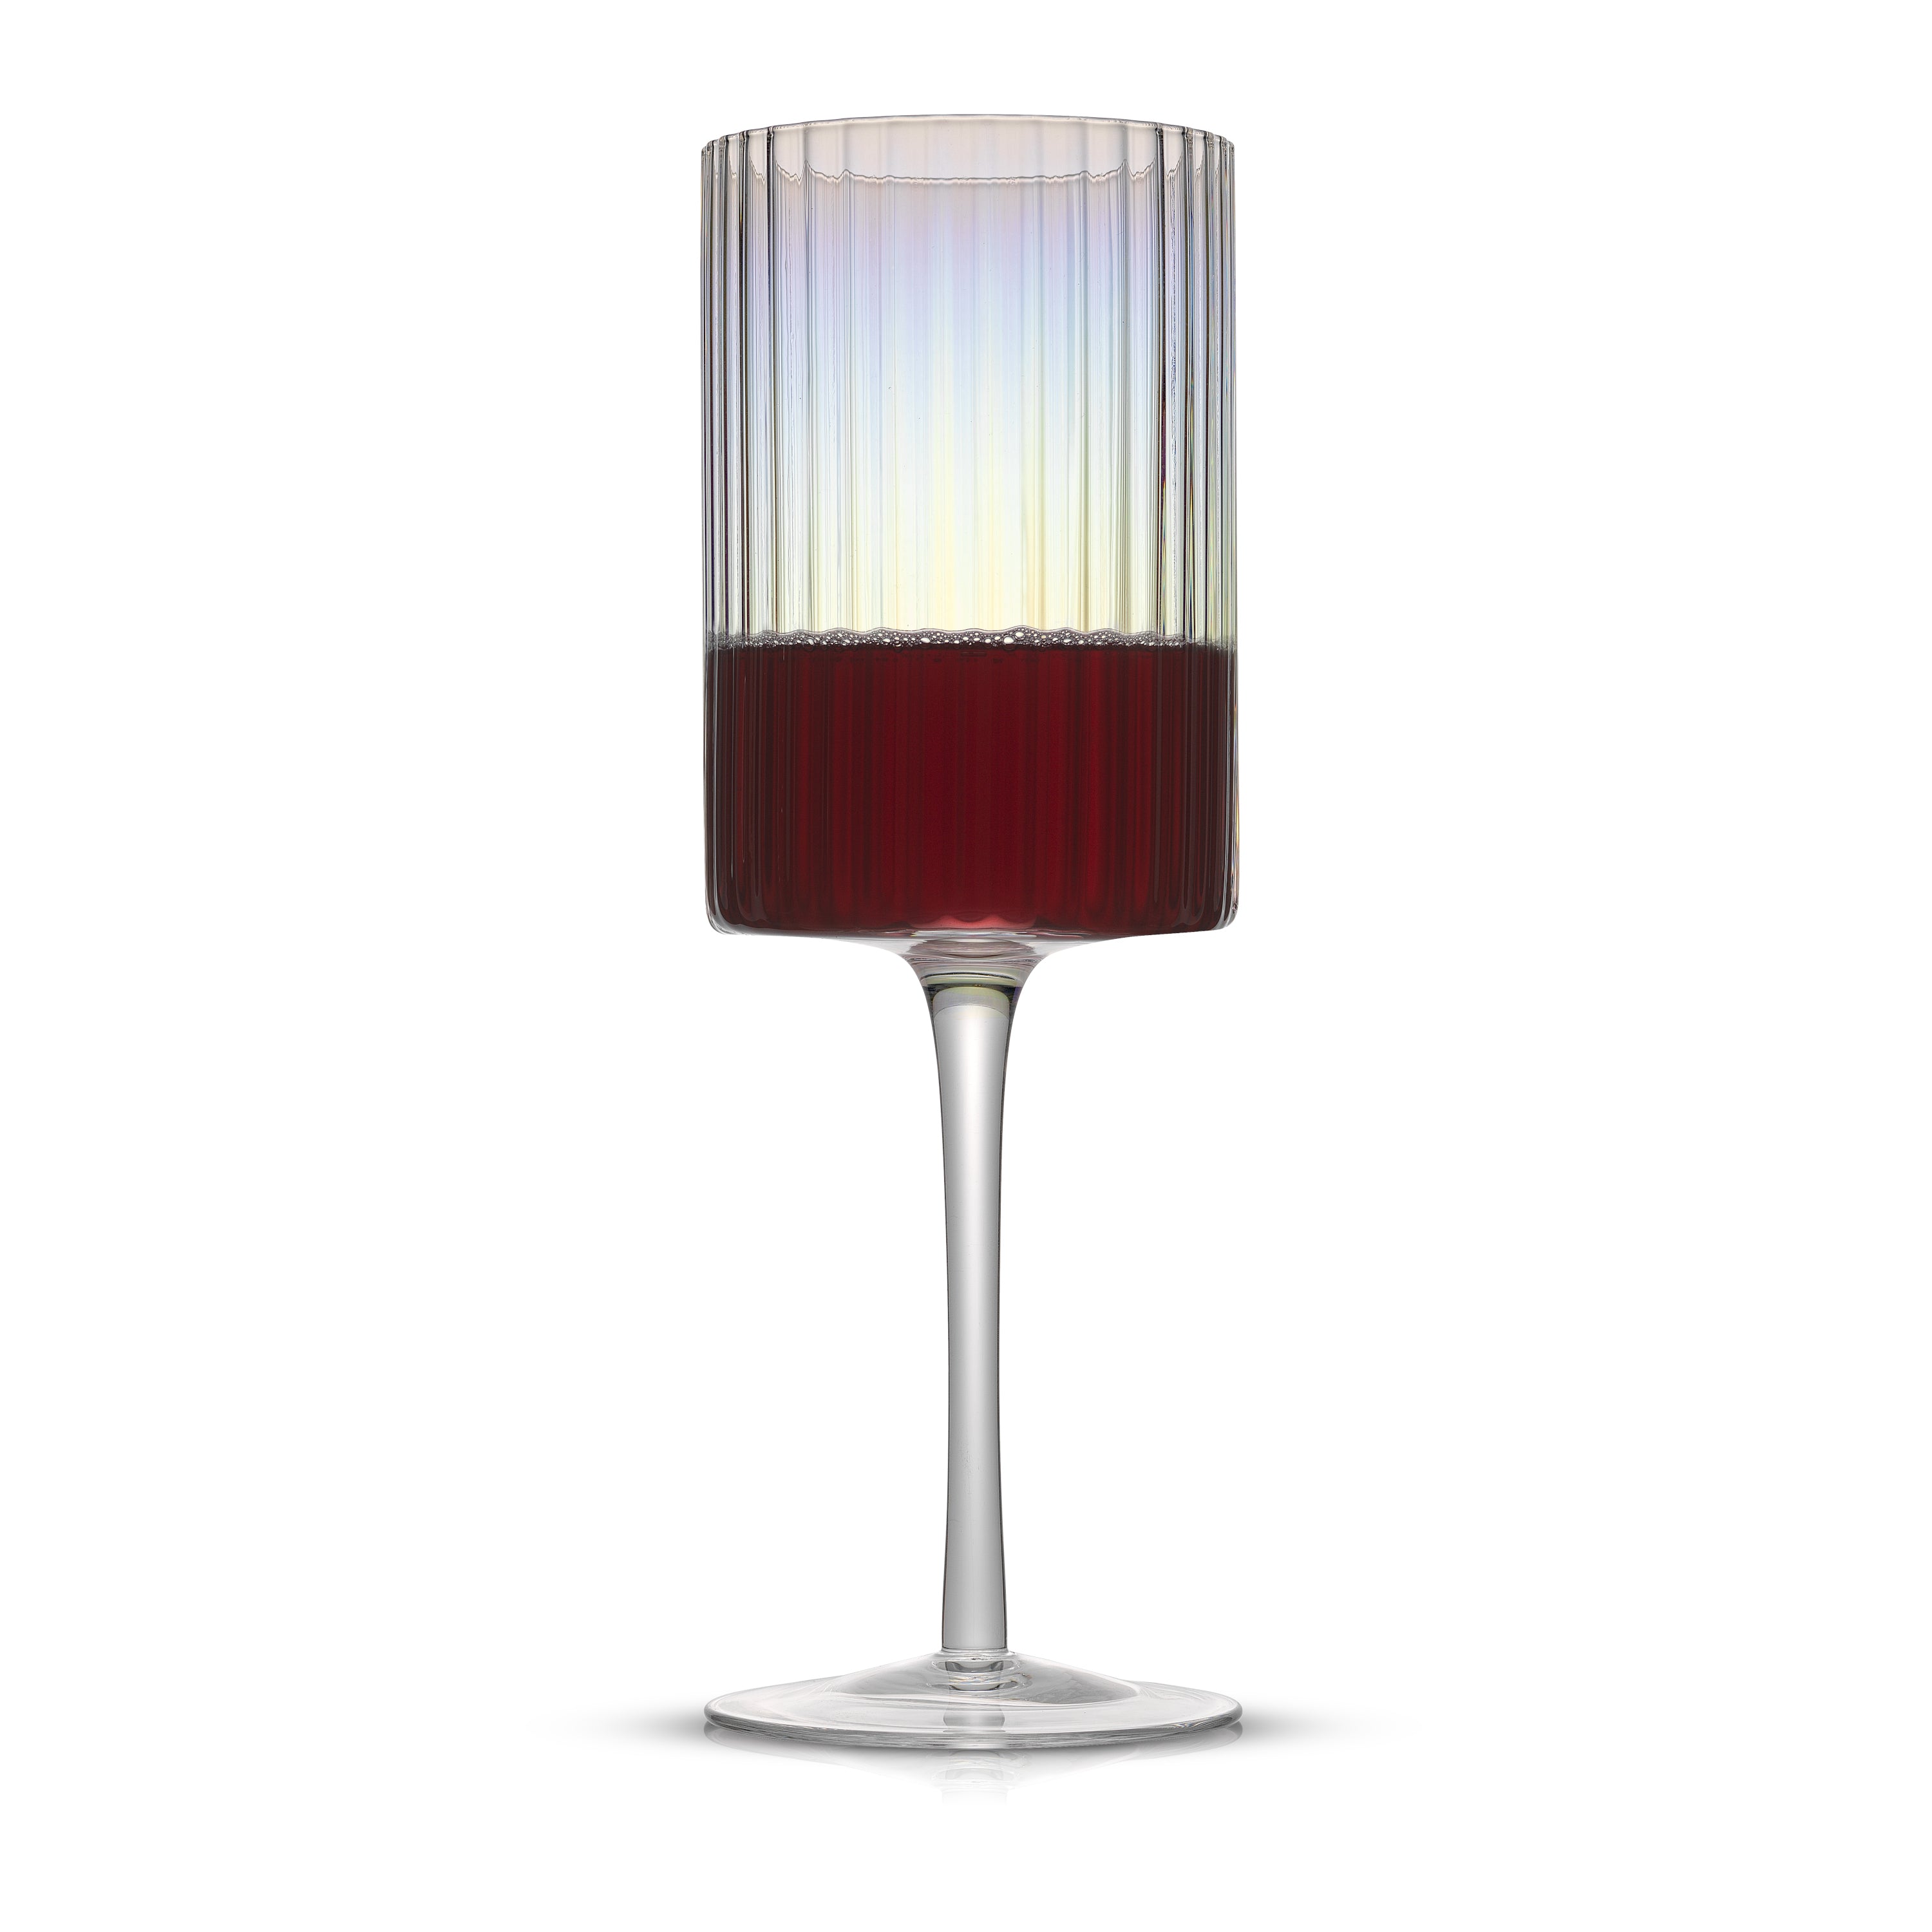 Christian Siriano New York Chroma Iridescent Red Wine Glass - 17.5 oz